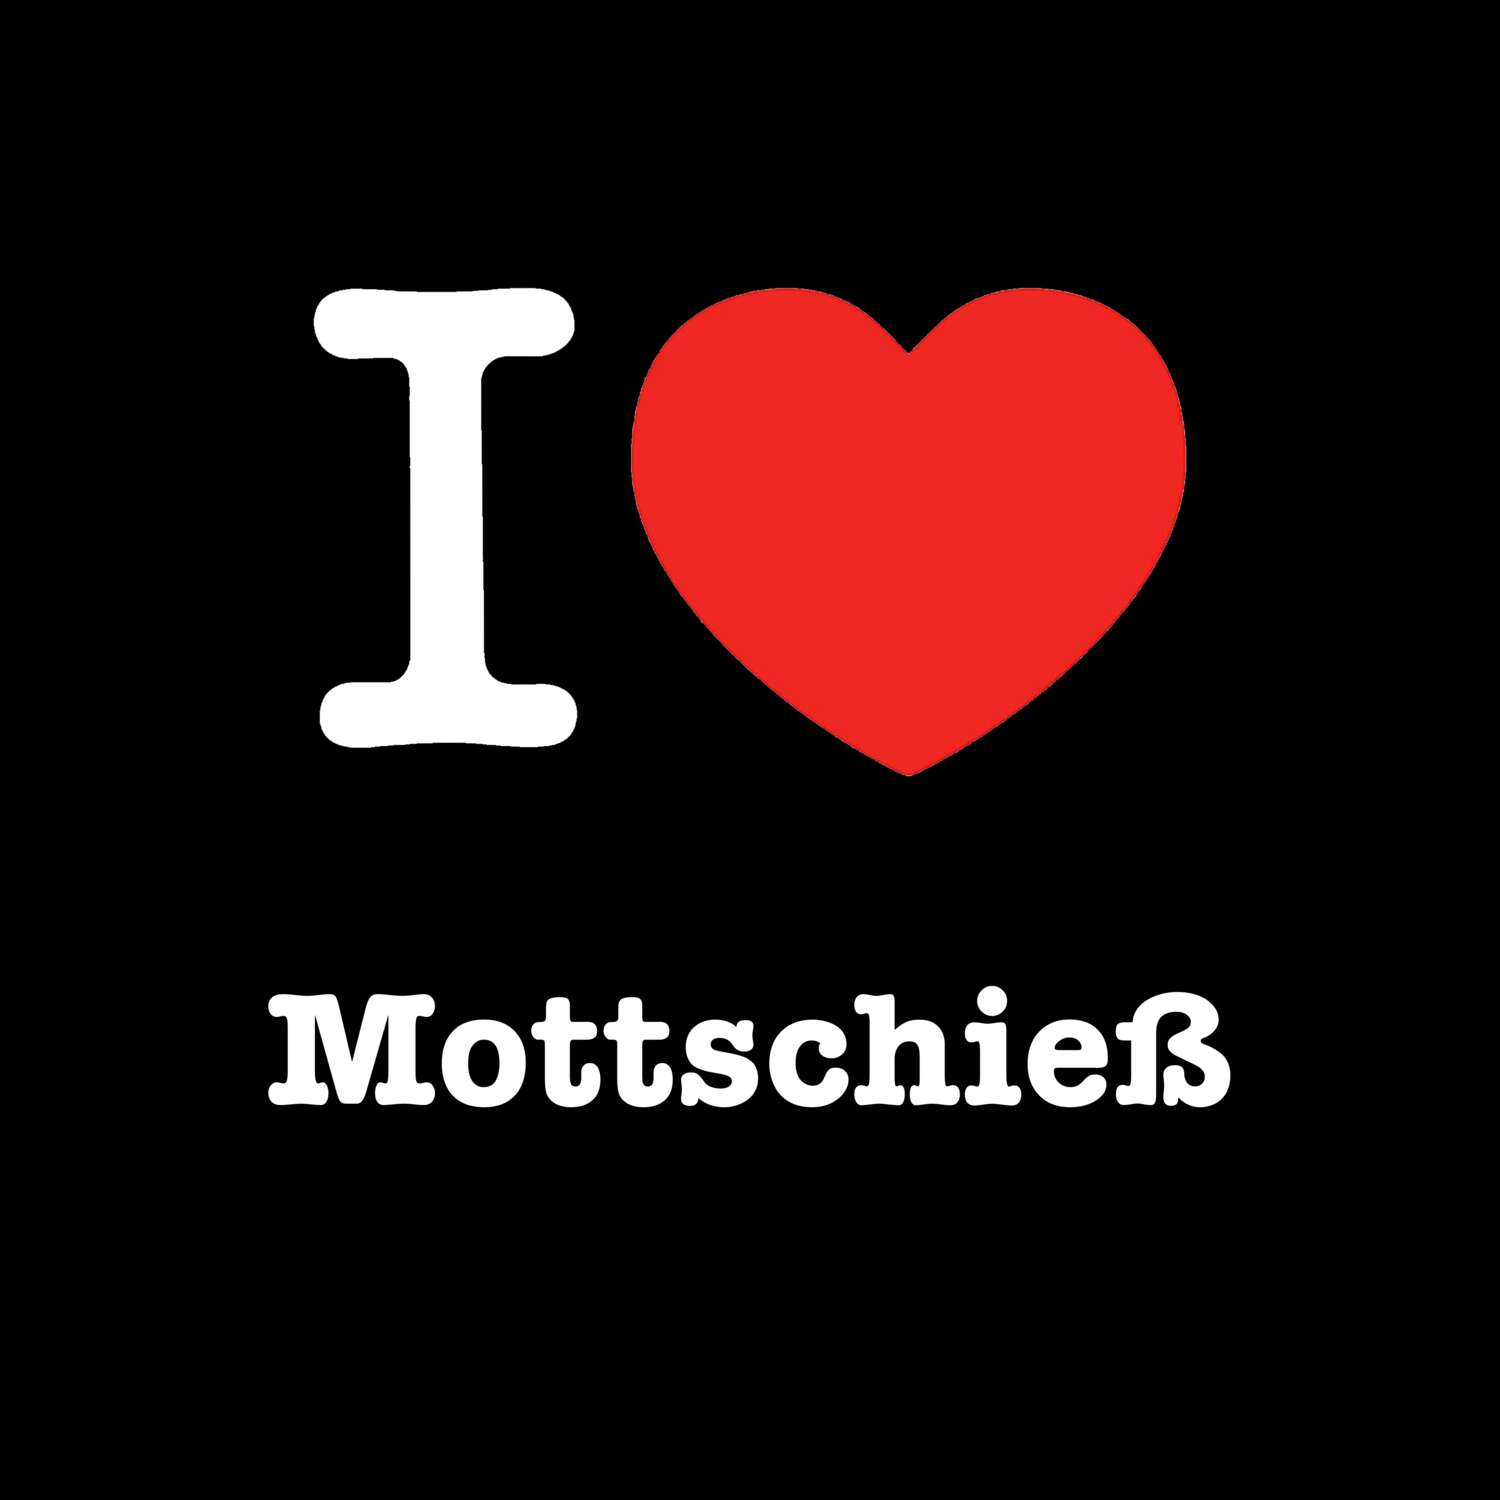 Mottschieß T-Shirt »I love«